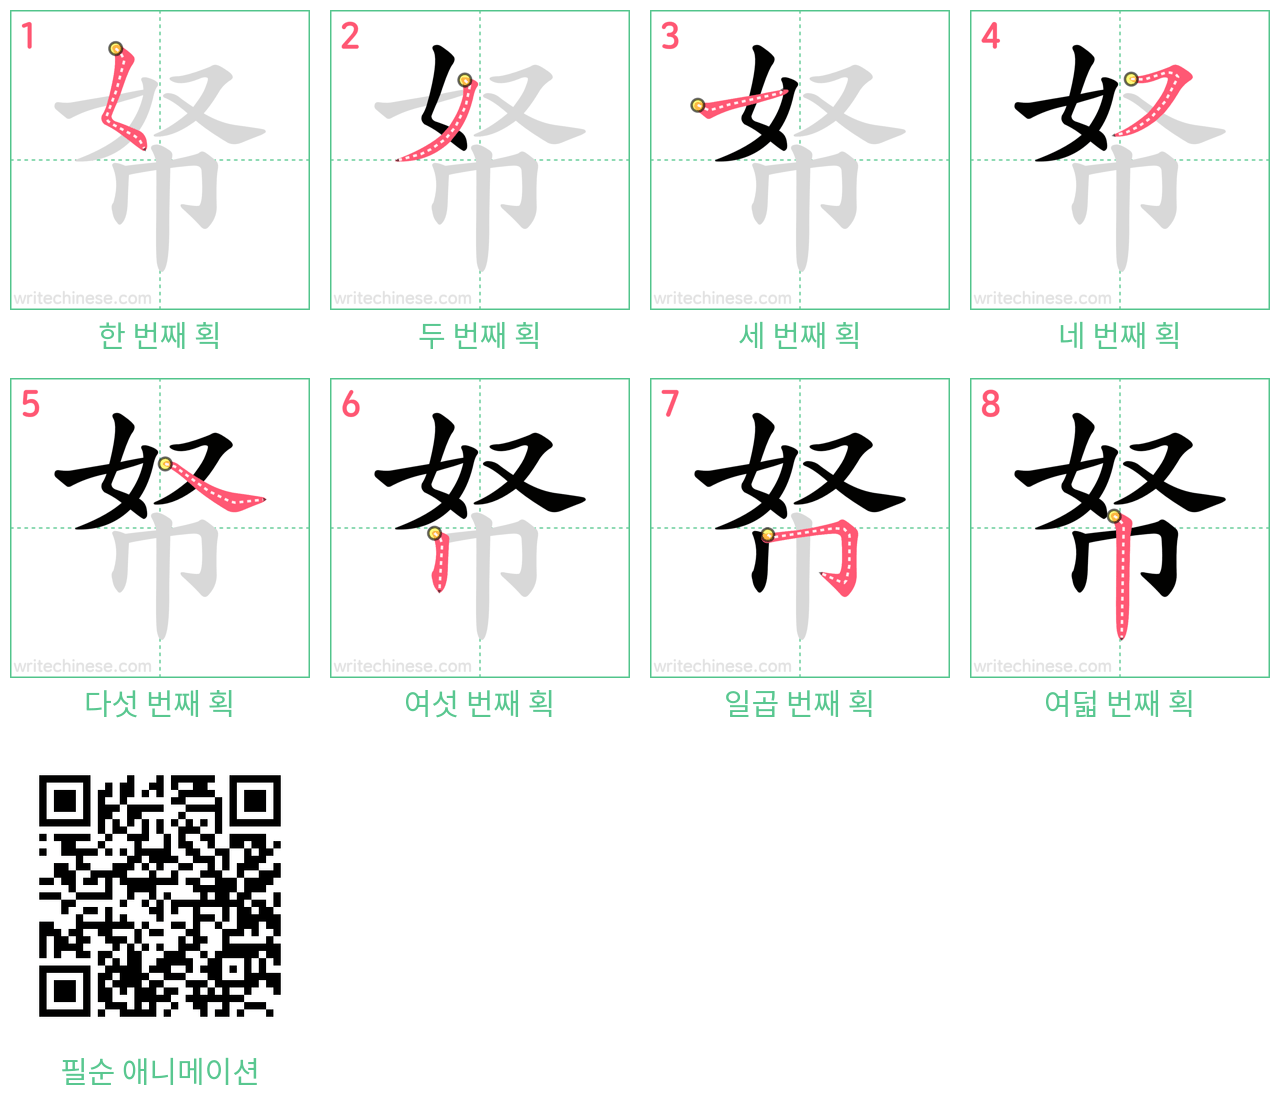 帑 step-by-step stroke order diagrams